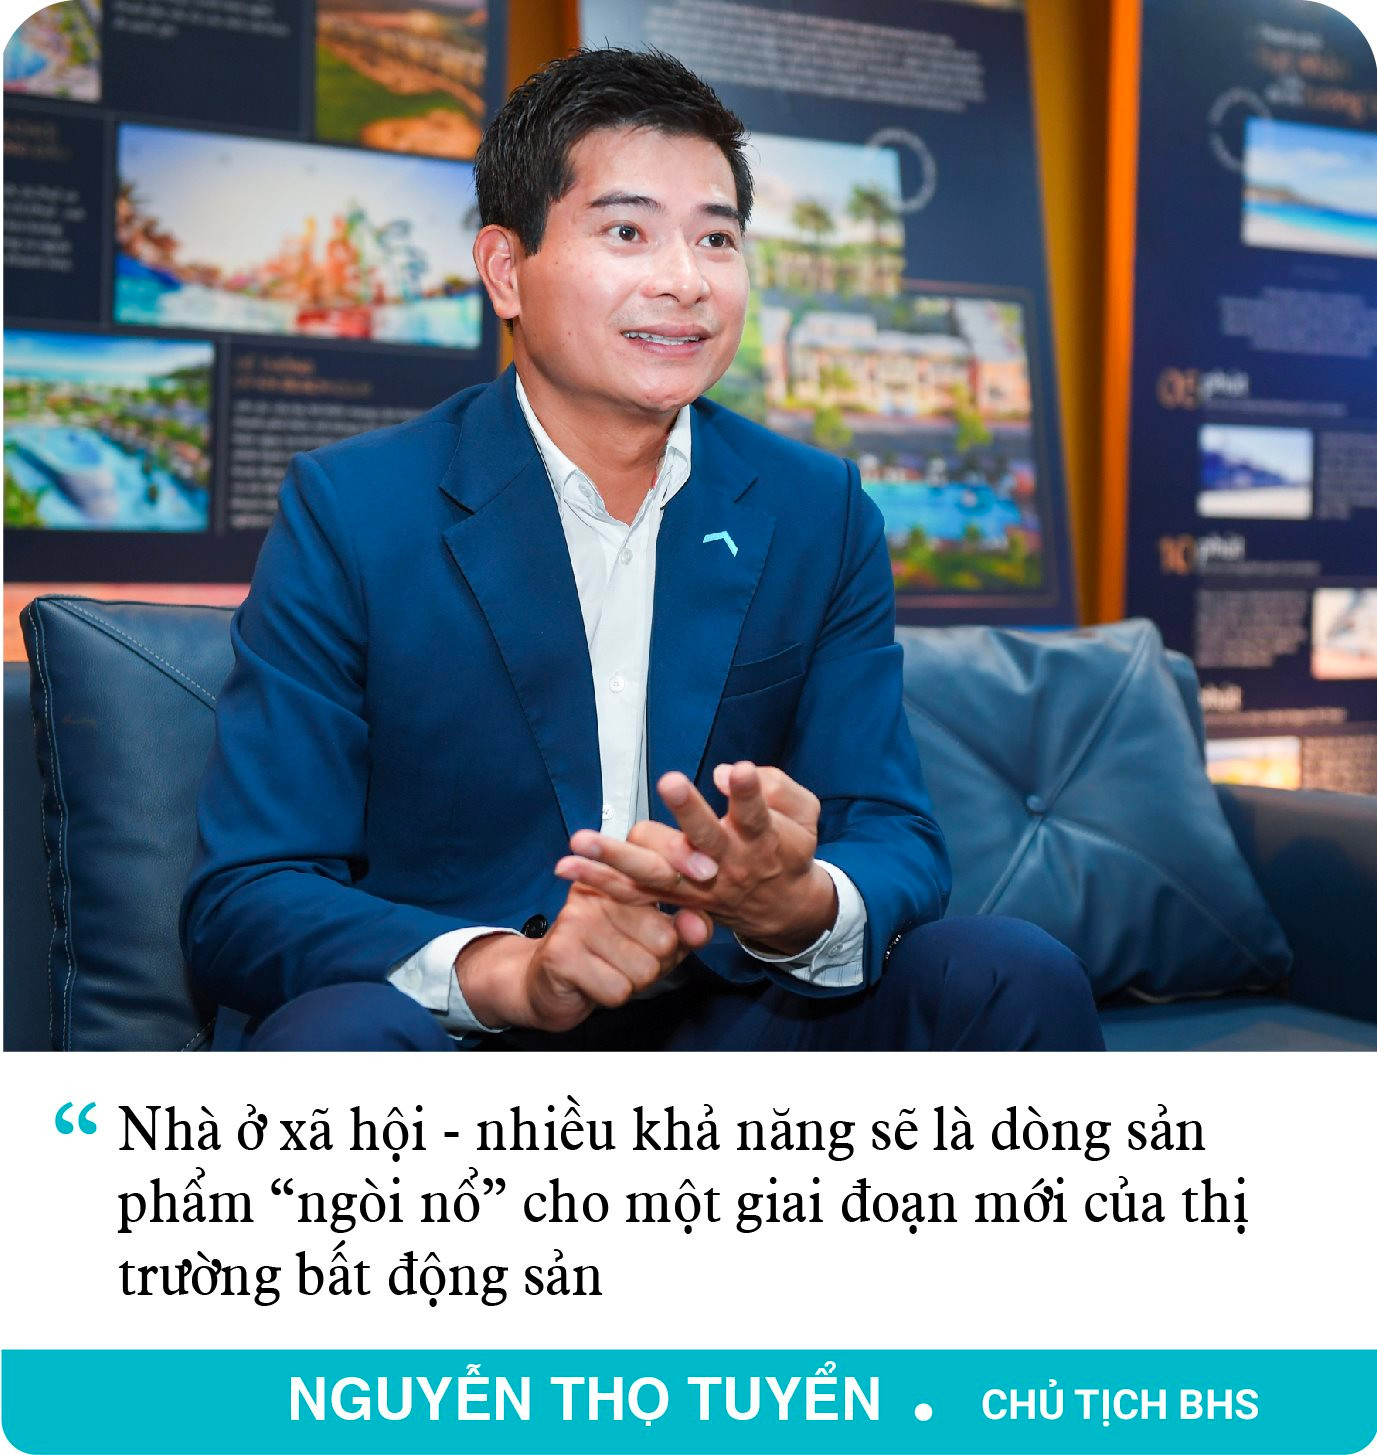 Chủ tịch BHS Nguyễn Thọ Tuyển: Sau cơn bão, cần chuẩn bị “bát cháo hành” hồi sức cho thị trường bất động sản - Ảnh 9.